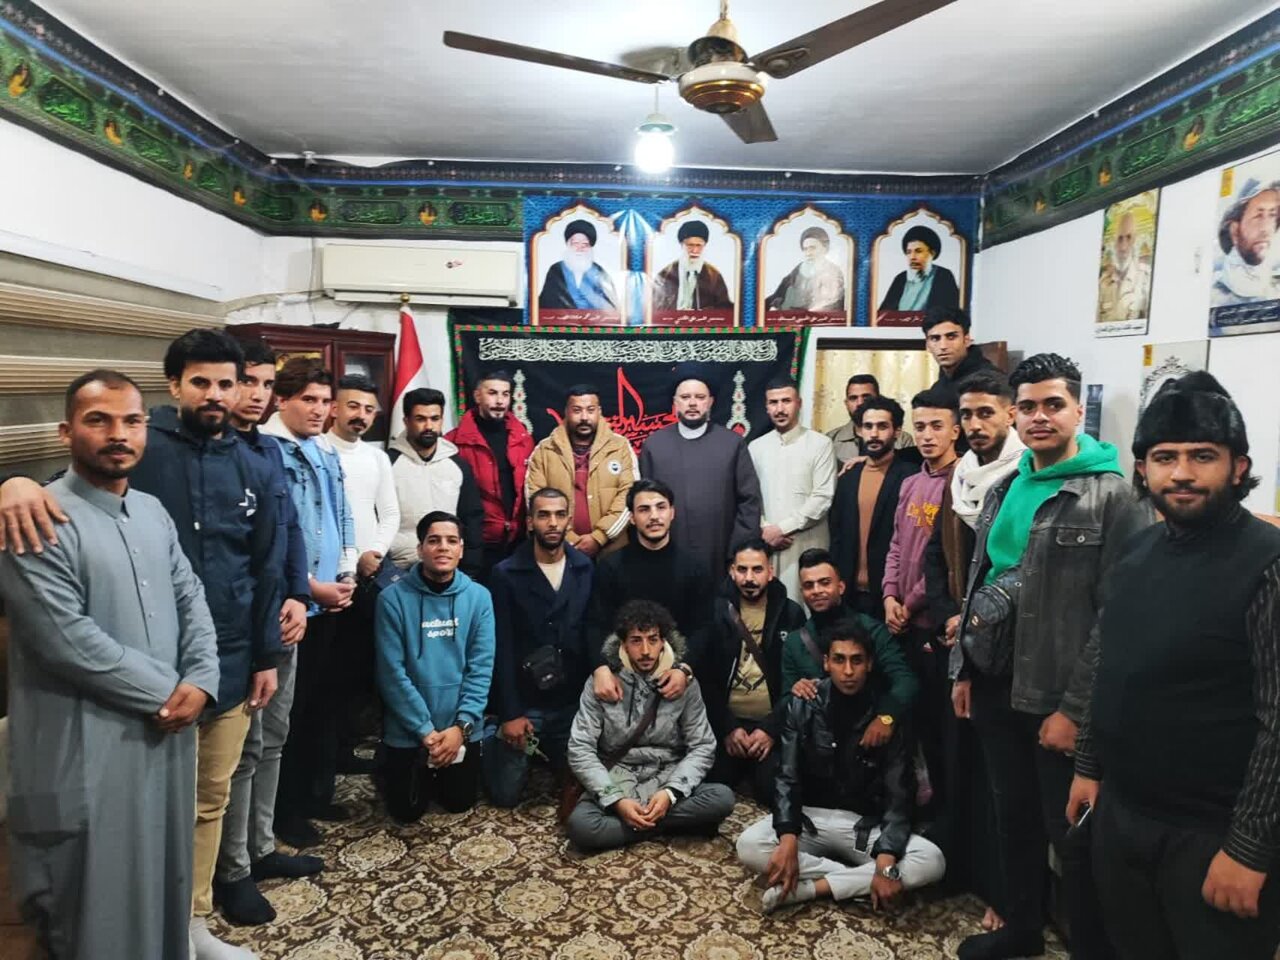 اردوهای علمی- زیارتی دانشجویان عراقی در ایران برگزار شد